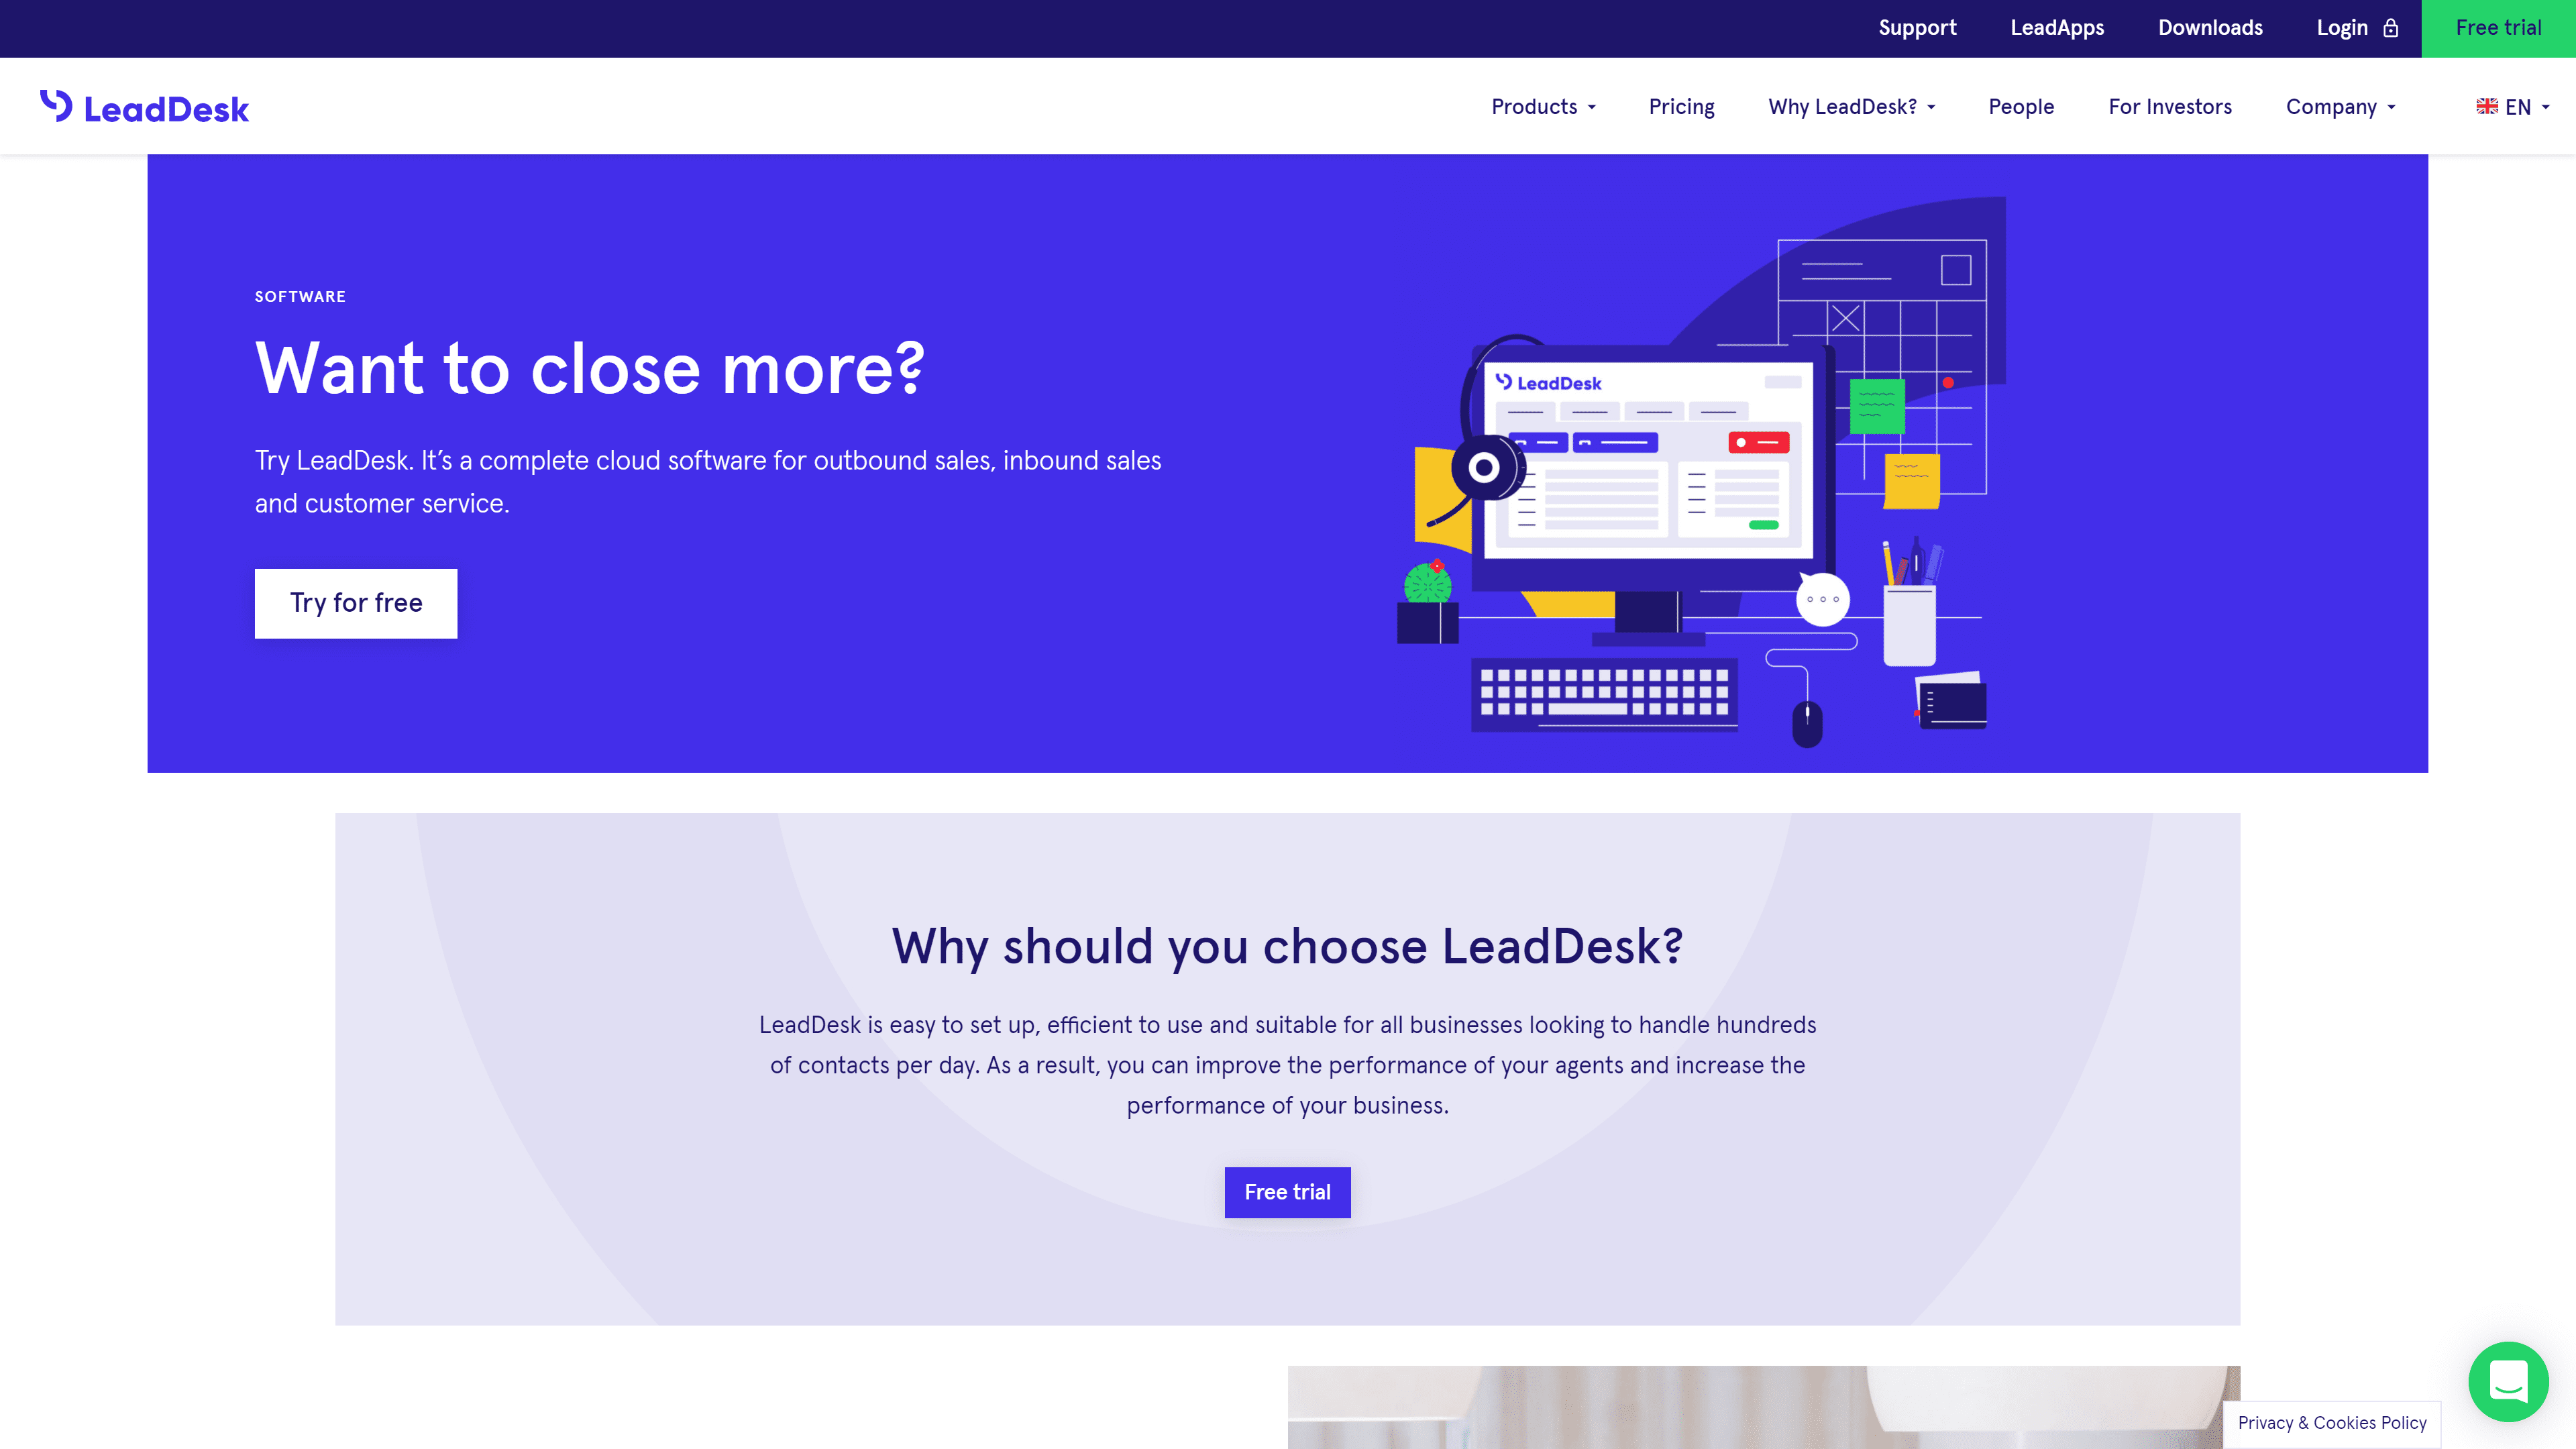 LeadDesk